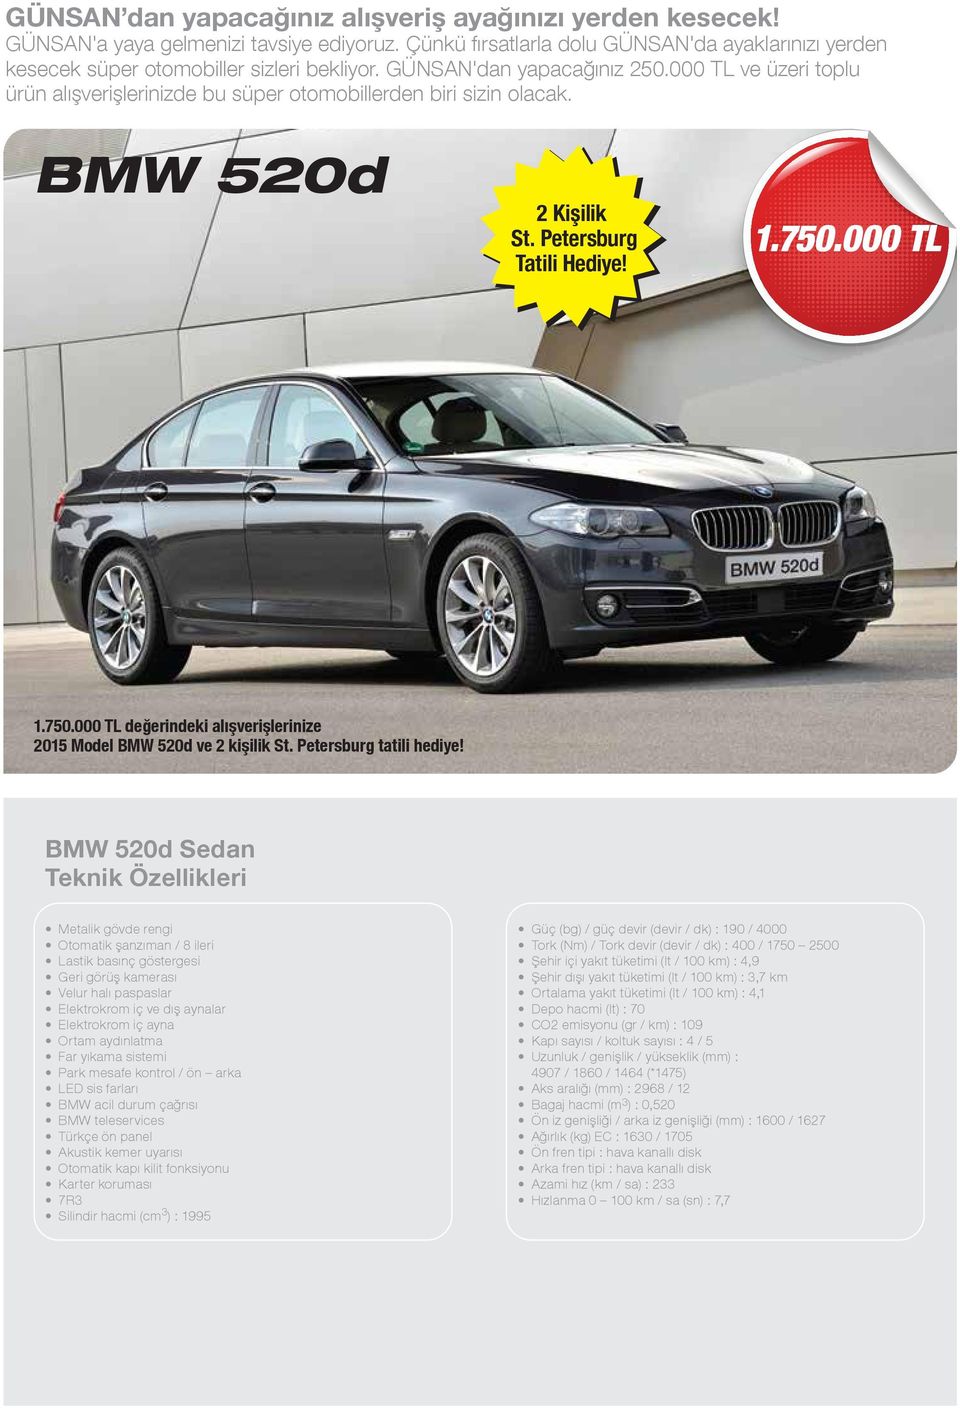 000 TL 1.750.000 TL değerindeki alışverişlerinize 2015 Model BMW 520d ve 2 kişilik St. Petersburg tatili hediye!